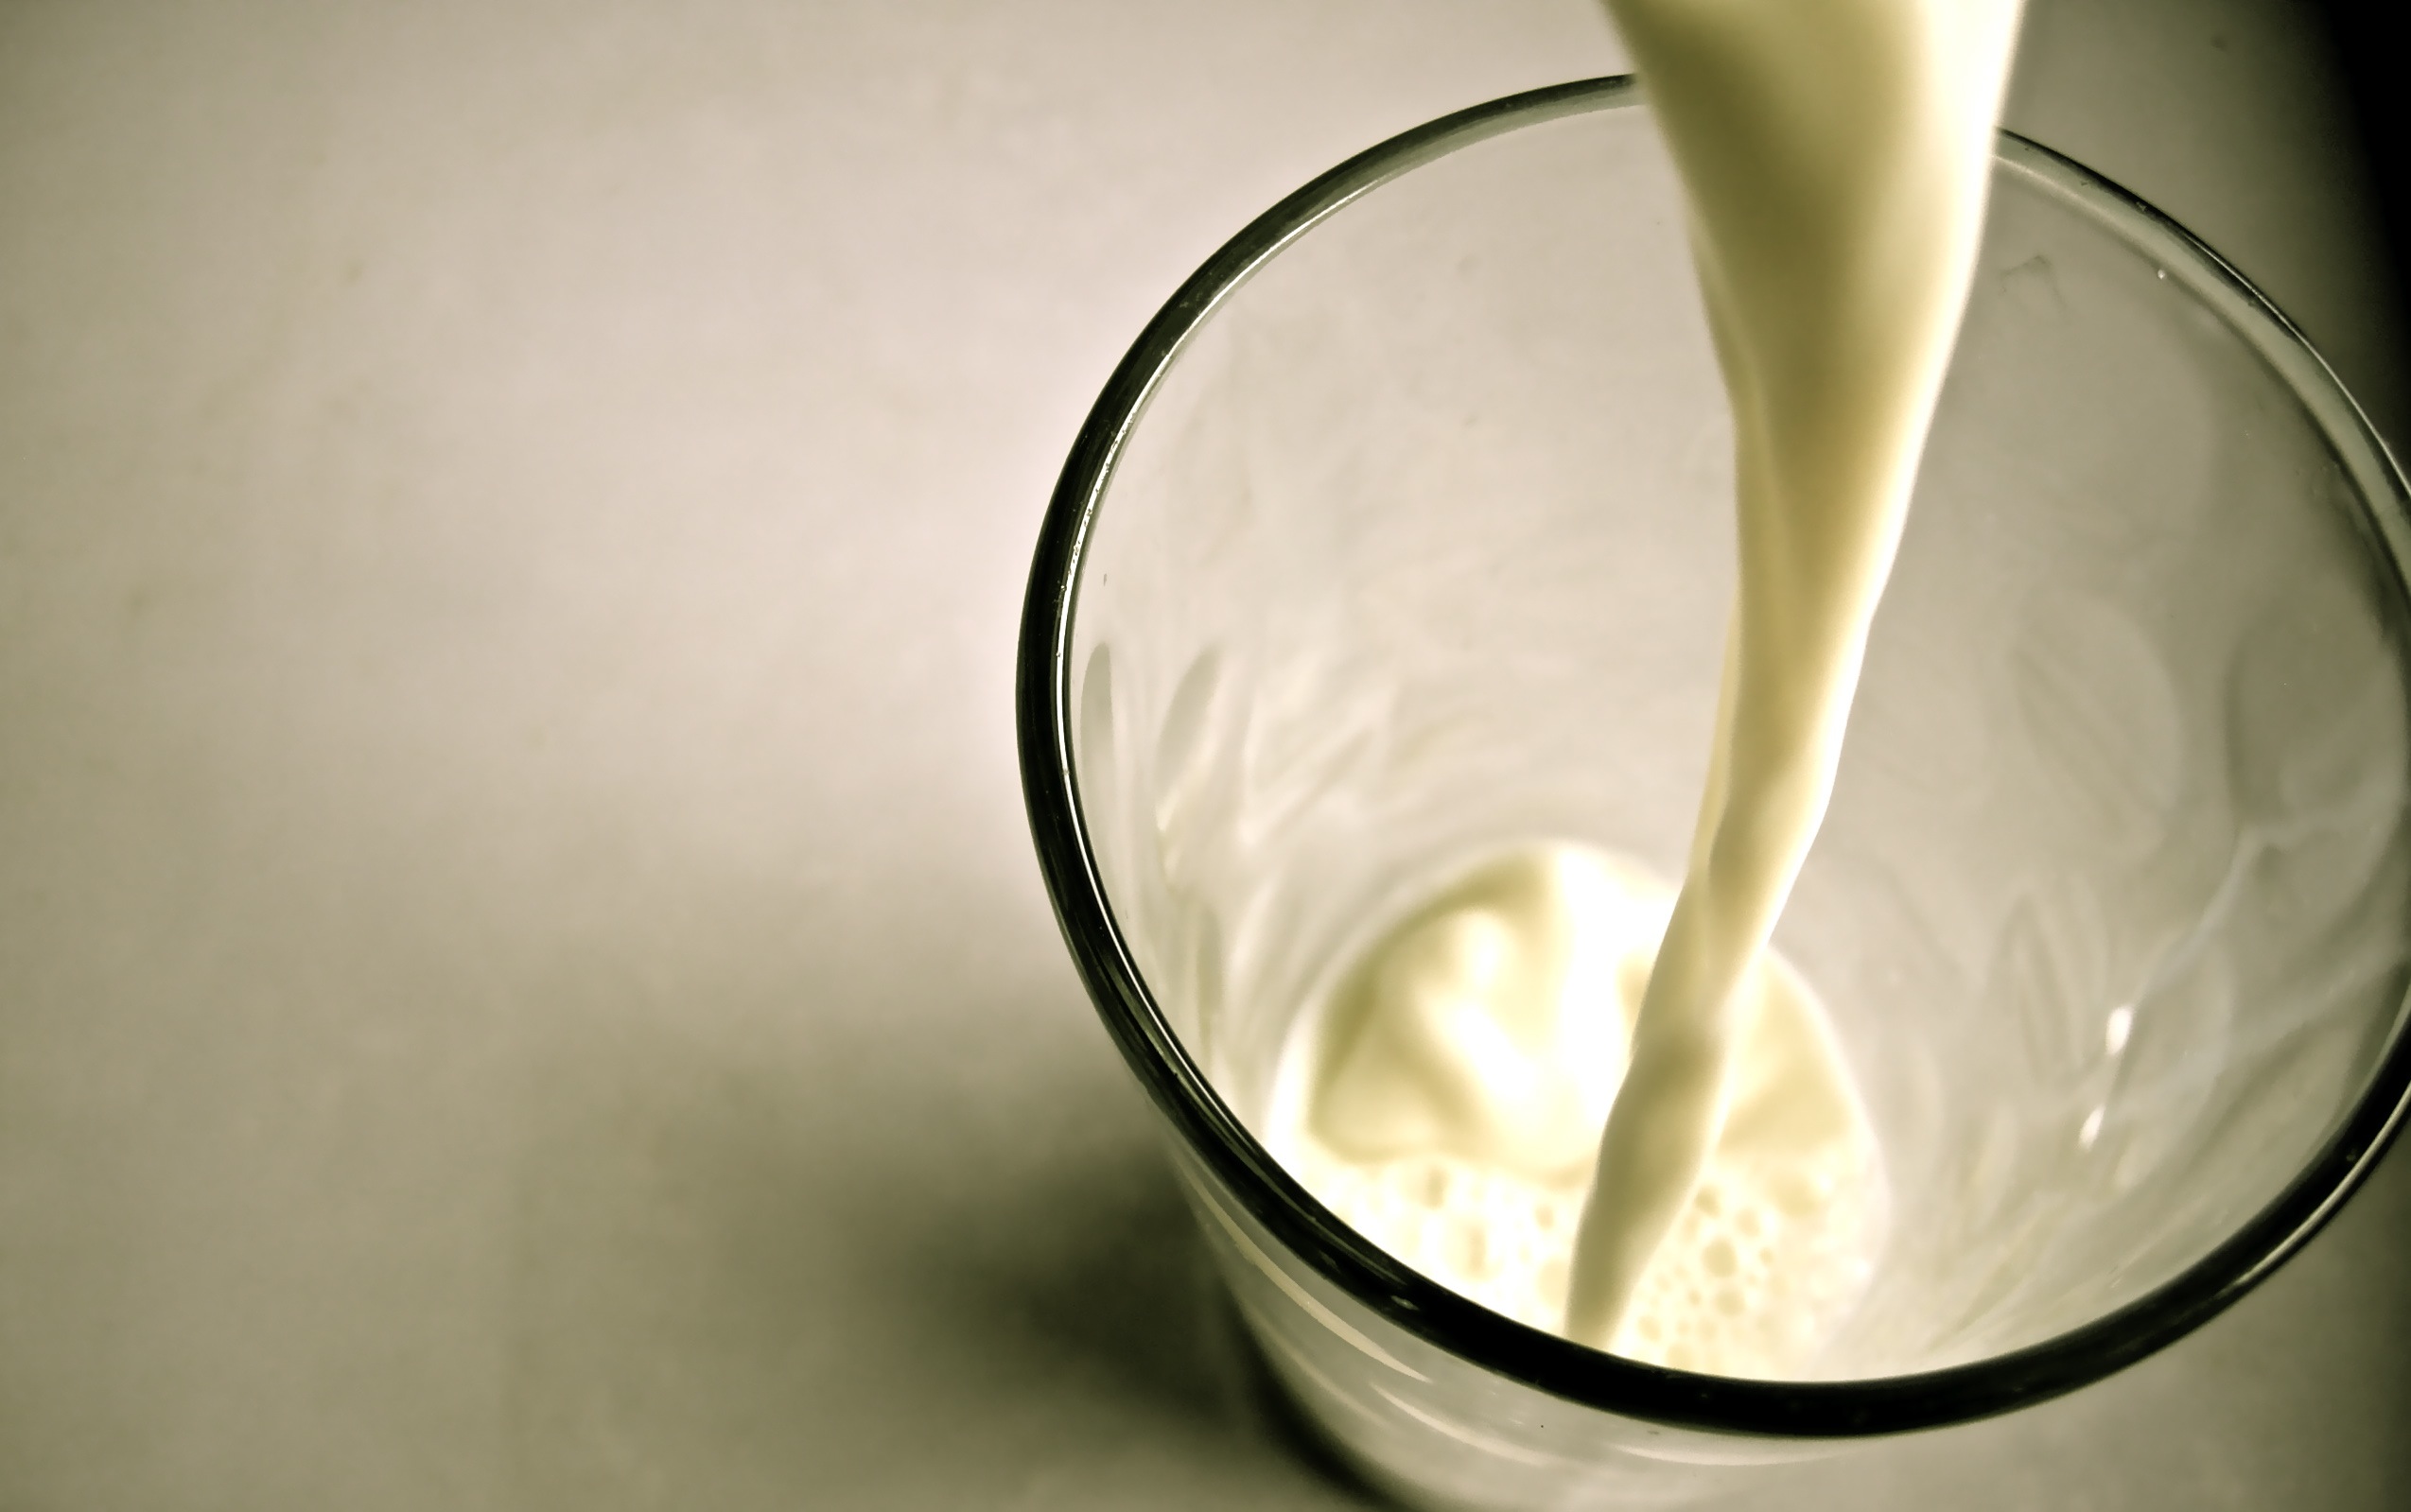 新西兰奶粉被曝“含毒” 中国暂未受影响